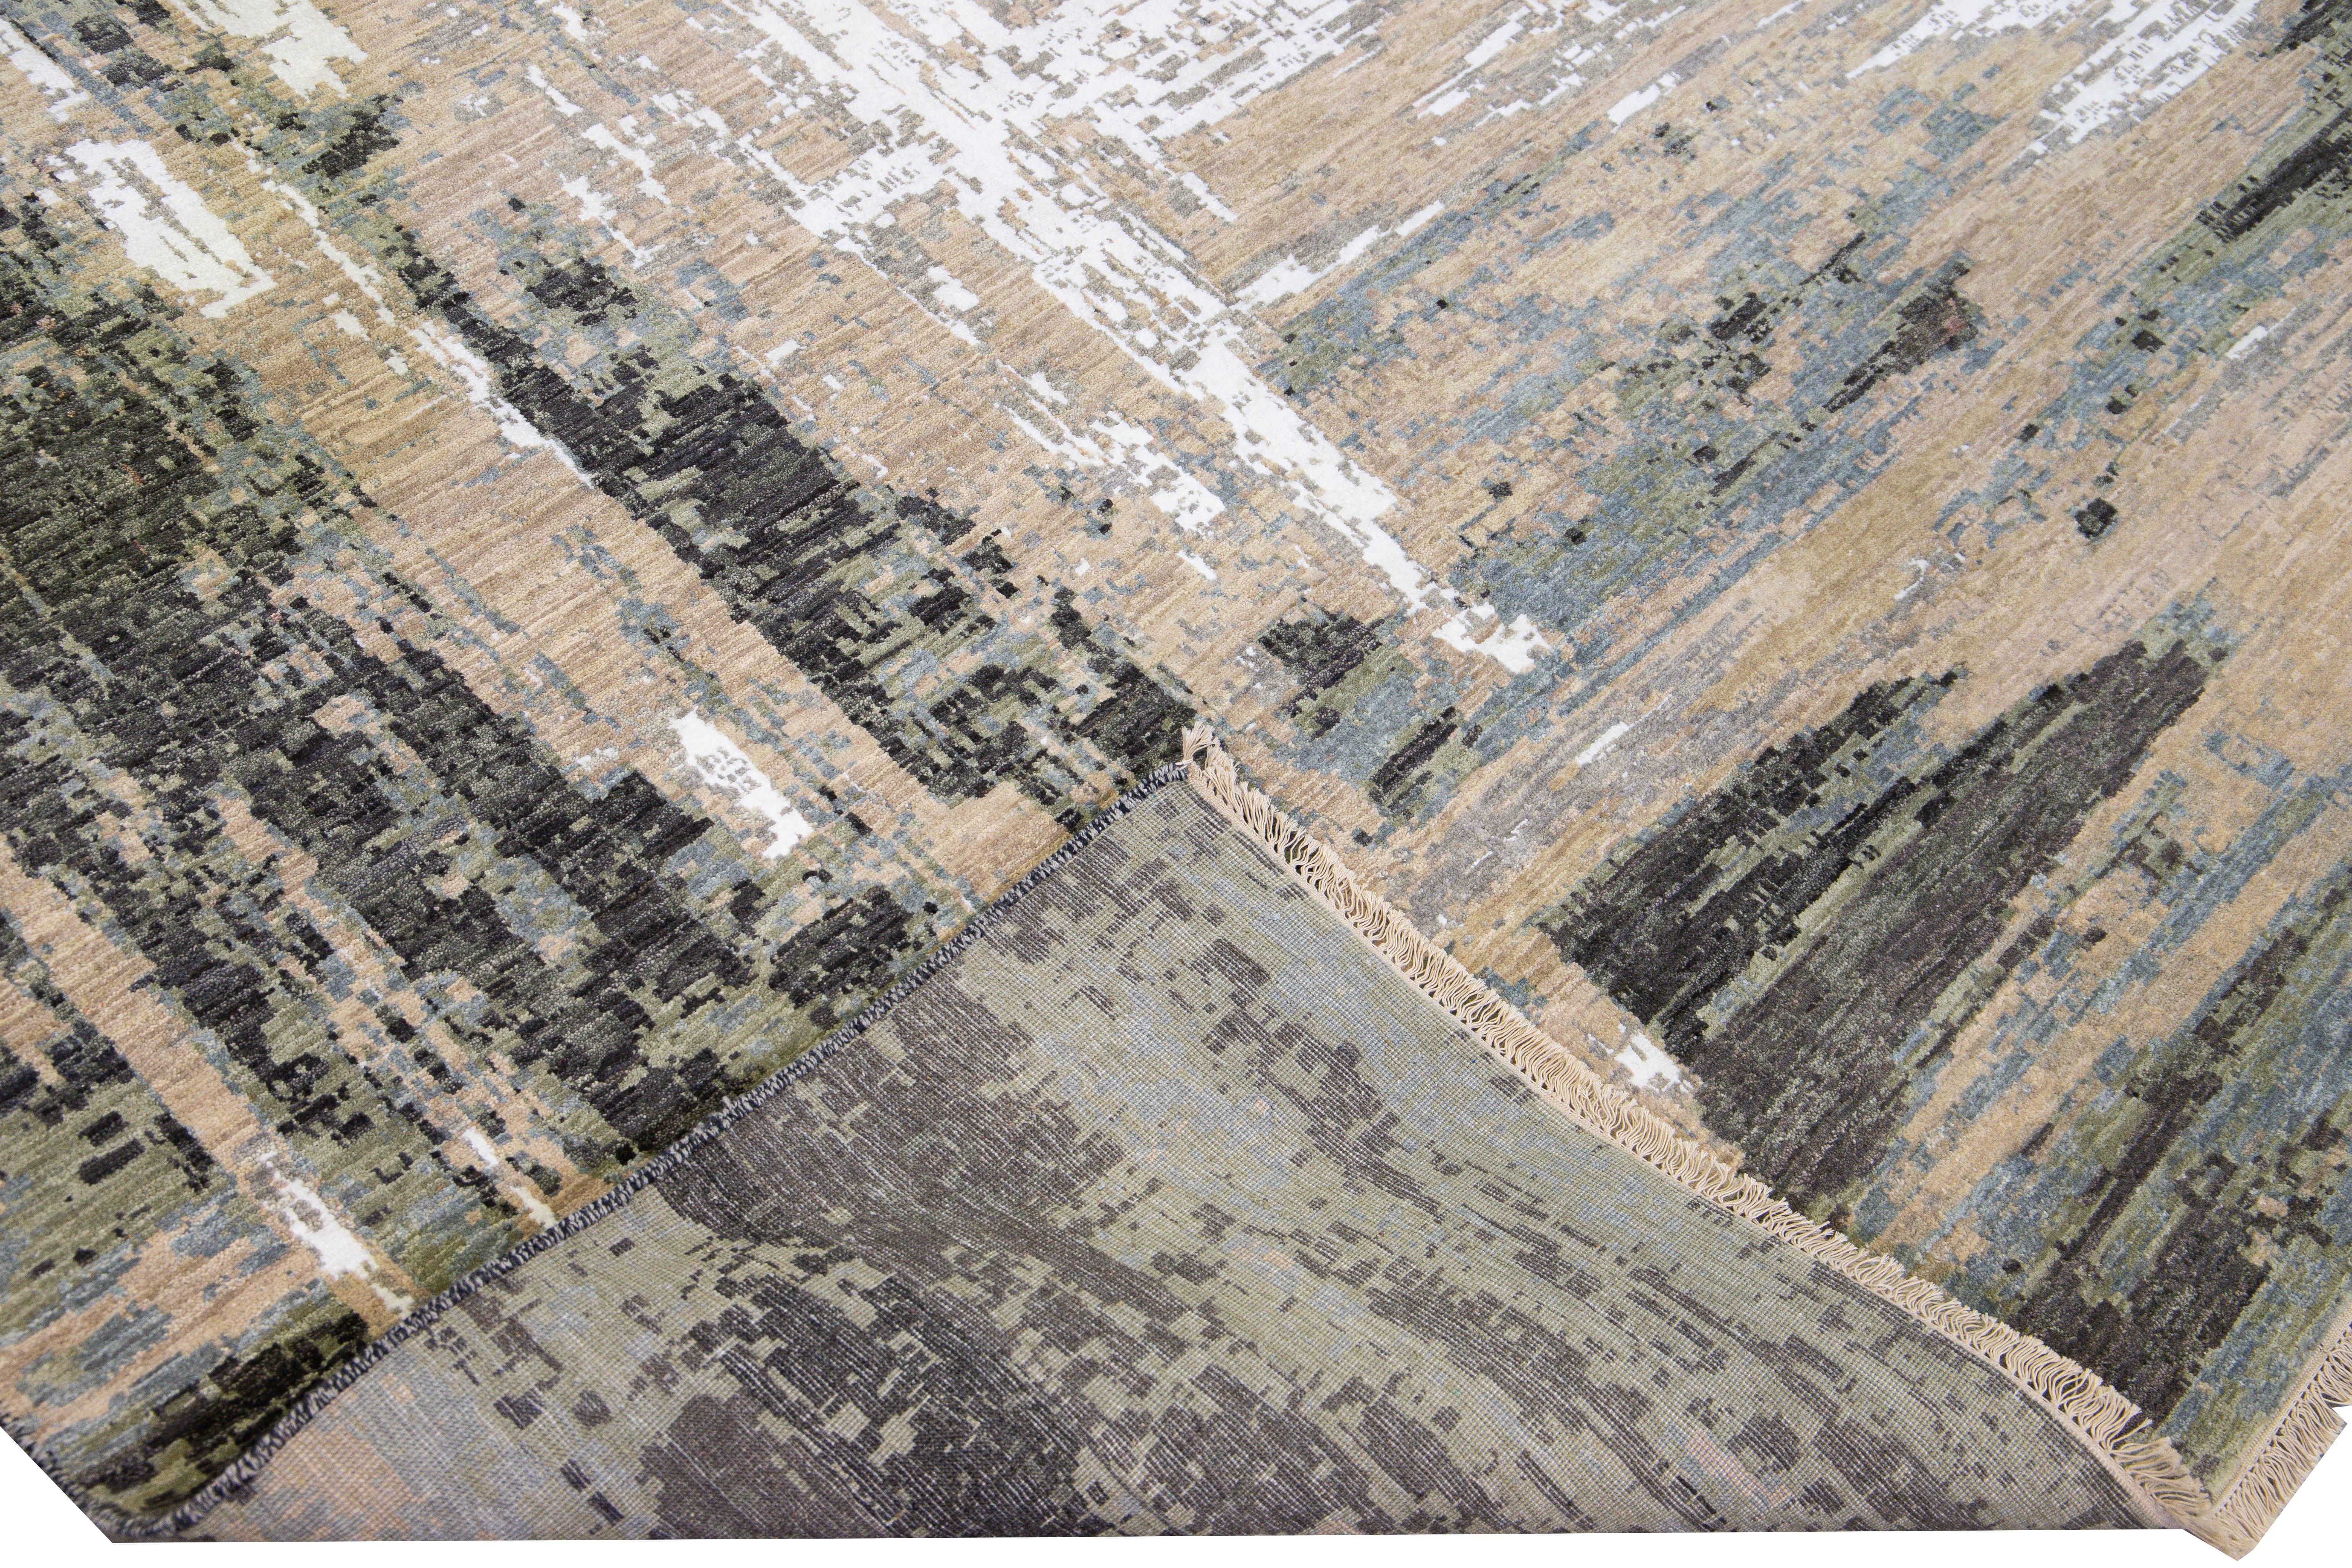 Schöner moderner indischer handgeknüpfter Woll- und Seidenteppich mit beigem Feld. Dieser moderne Teppich hat graue, braune, elfenbeinfarbene und braune Akzente und ein wunderschönes abstraktes Allover-Muster.

Dieser Teppich misst: 10'1